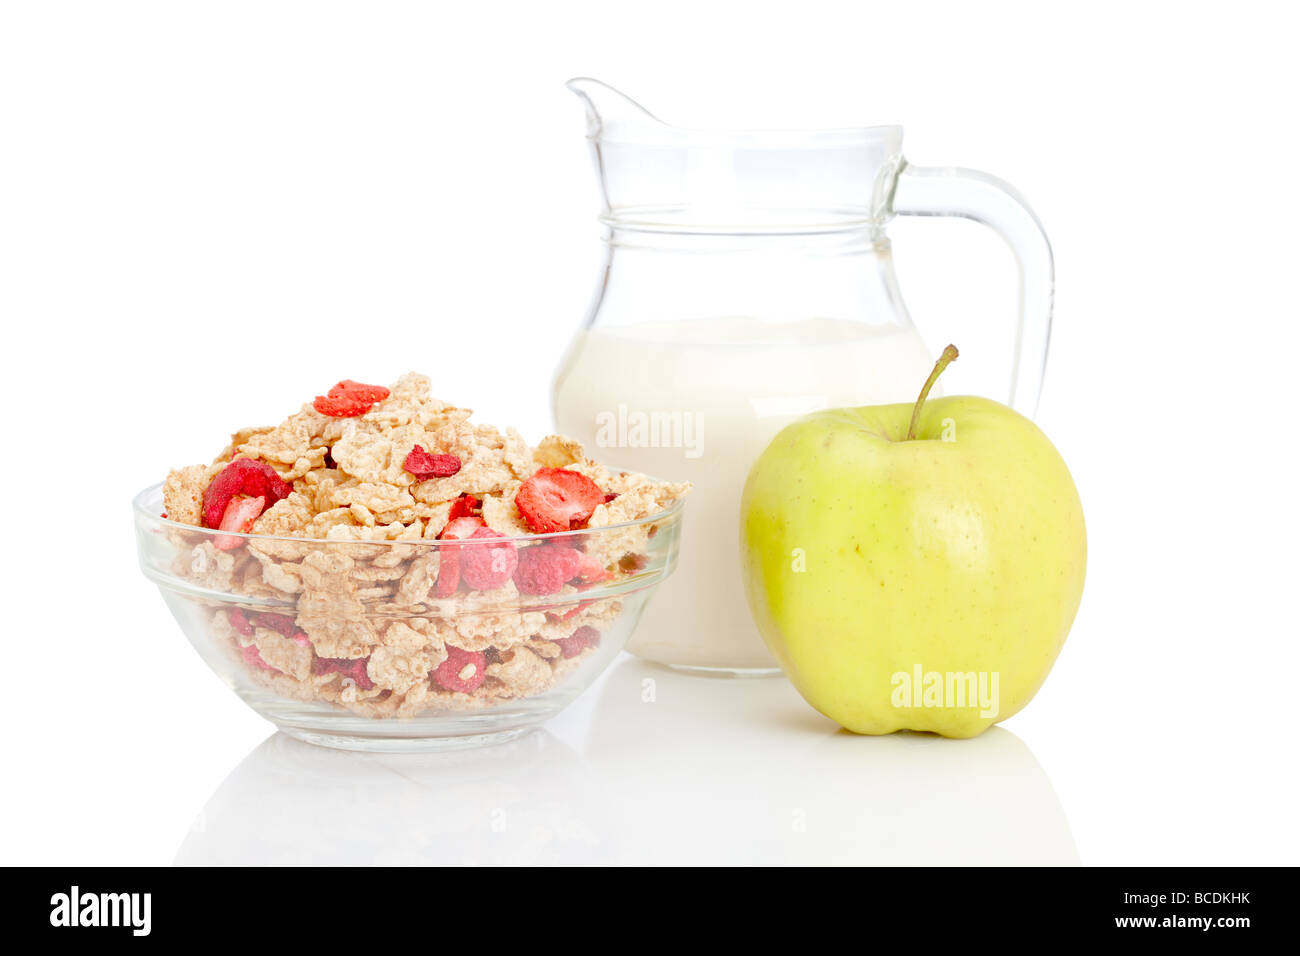 Eine Schüssel mit Cornflakes frischen Apfel und Milch Krug auf weißem Hintergrund geringe Schärfentiefe Stockfoto